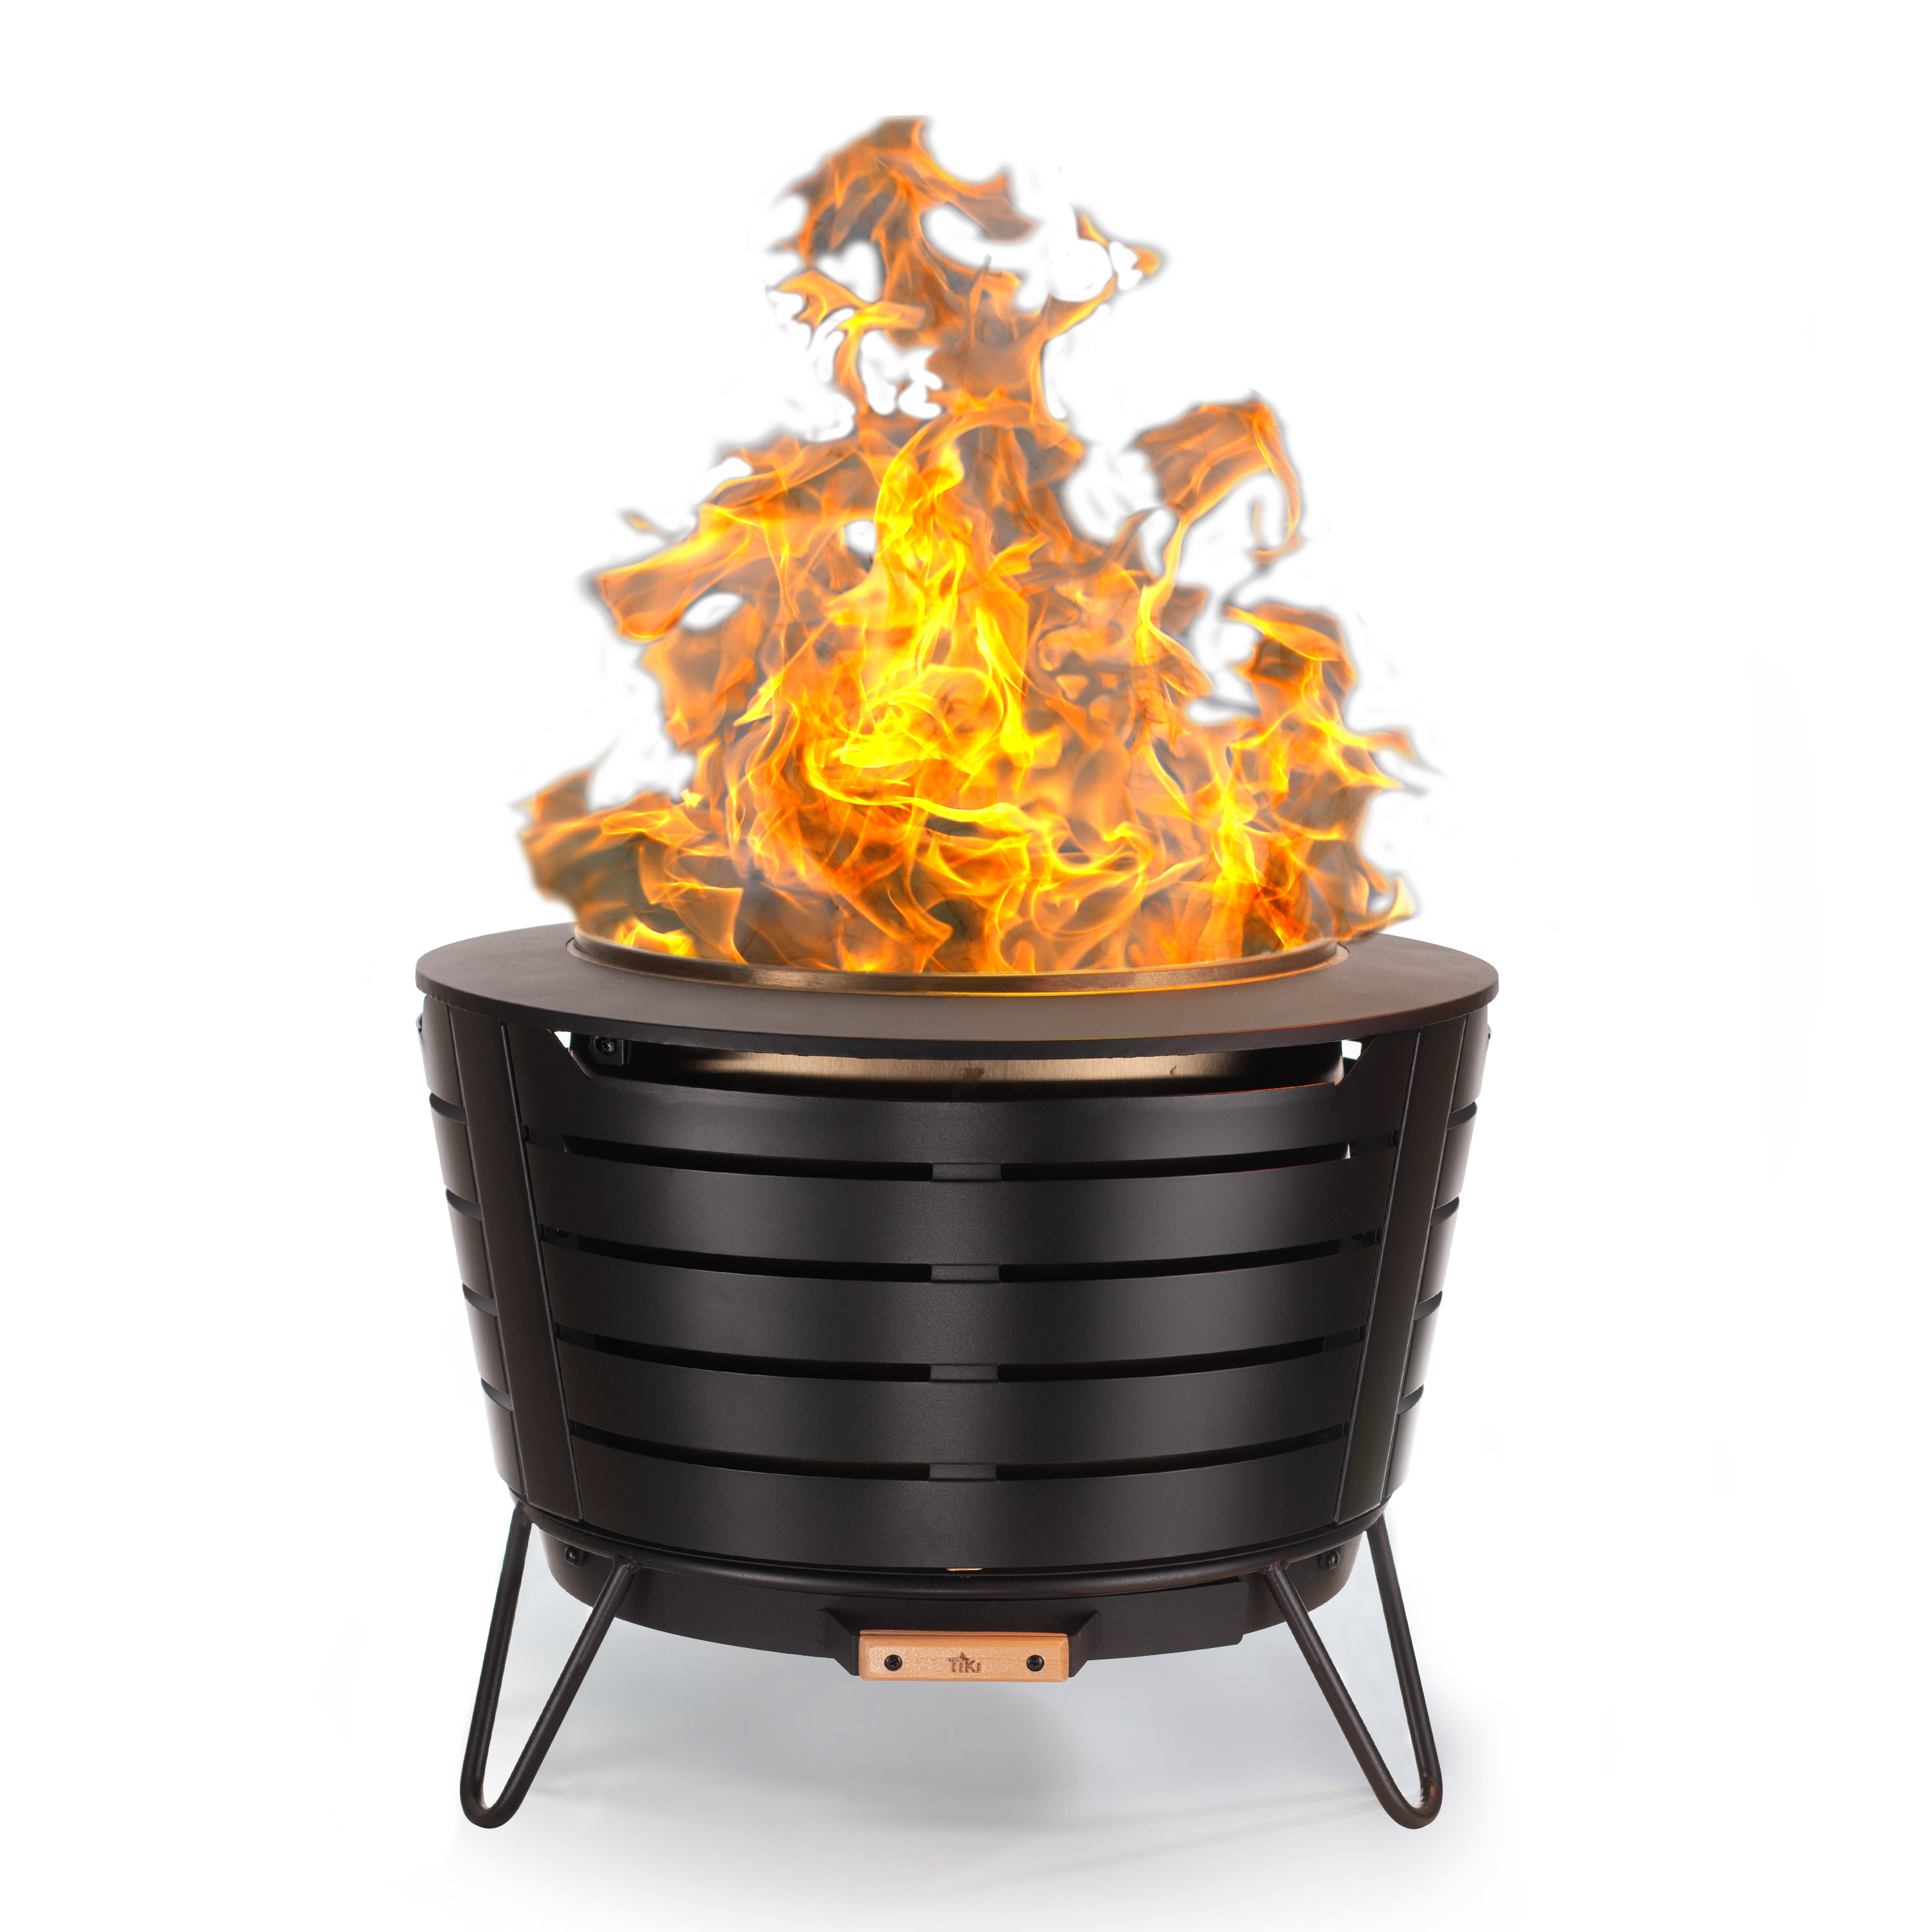 TIKI Brand Smokeless Patio Stainless Steel Fire Pit 25" - image 1 of 7